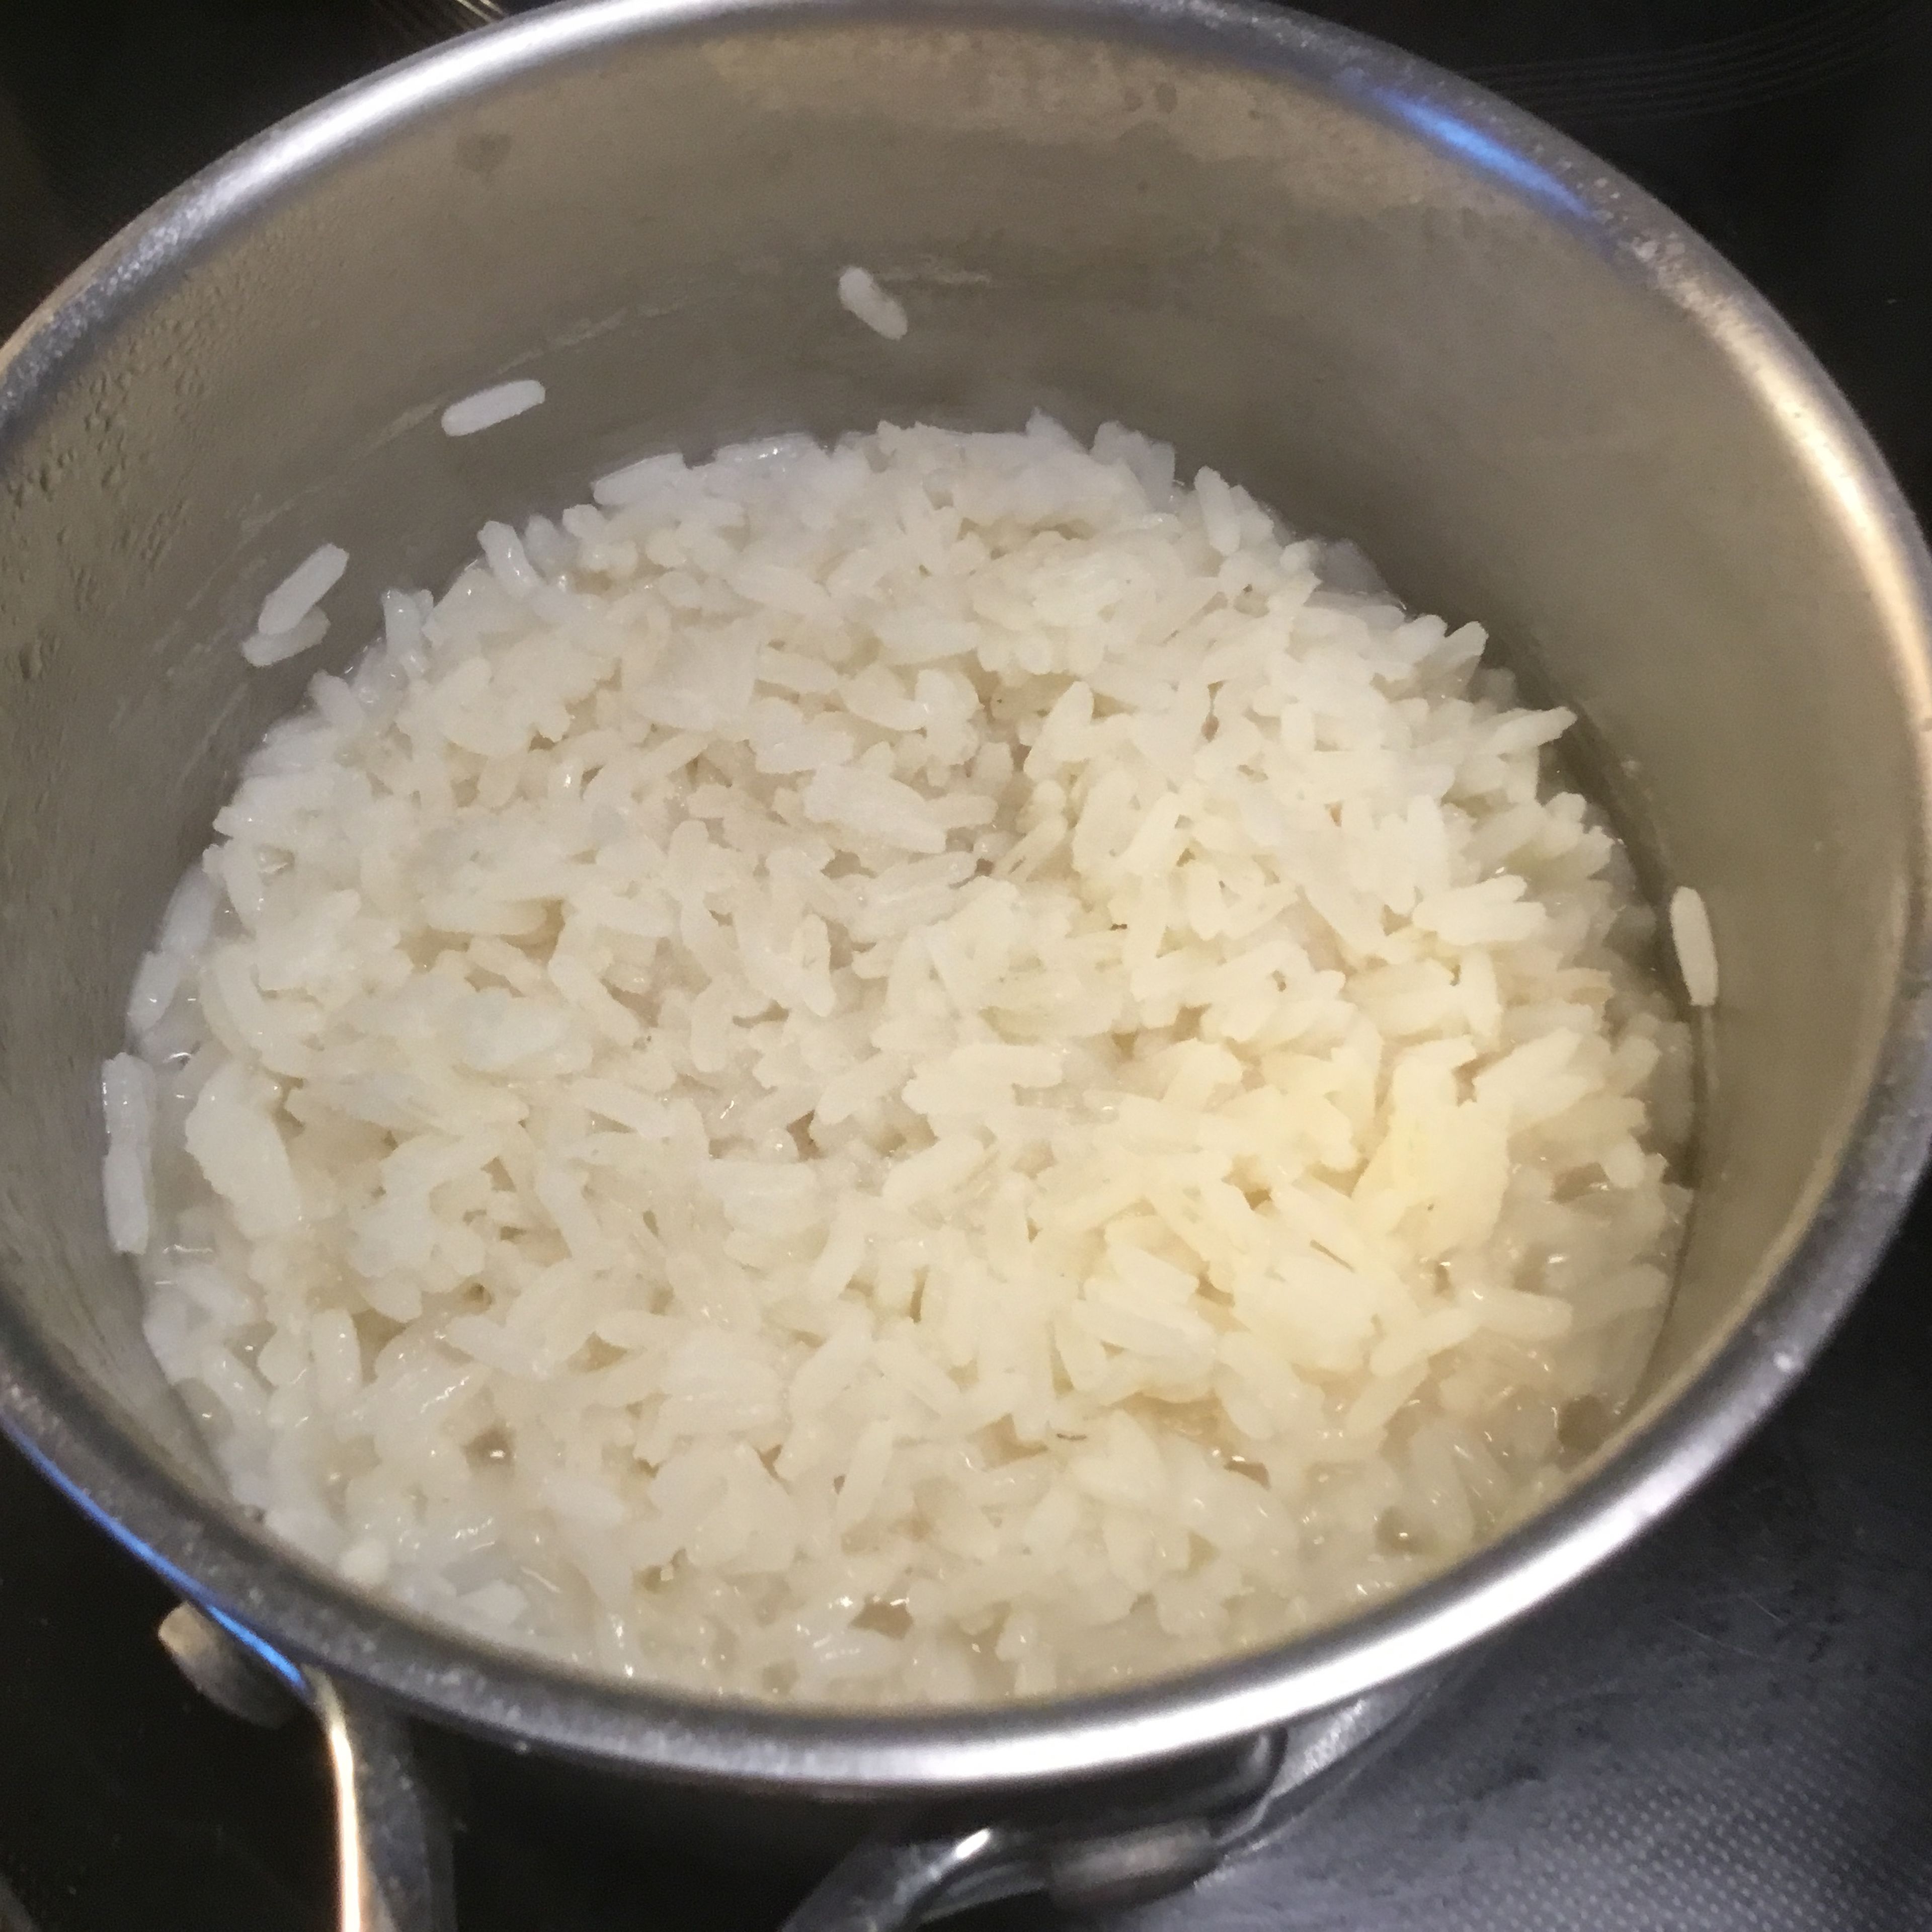 Den Reis koche ich typisch europäisch. Wasser in den Topf, Prise Salz dazu, aufkochen und den Reis nach dem kochen beigeben. Das alte Reis/Wasserverhältnis ist eigentlich egal, da ich bei offenem Topf solange Wasser ergänze bis der Reis mit bischen Biß fertig ist. Danach mit einem kleinen Sieb auf dem Teller portionieren. Wer den Reis asiatisch pappig mag, das ganze mit geschlossenem Deckel kochen. Immer sollte der Reis vor dem kochen wg. evtl. Arsengehalt gut mit kaltem Wasser gespült werden.